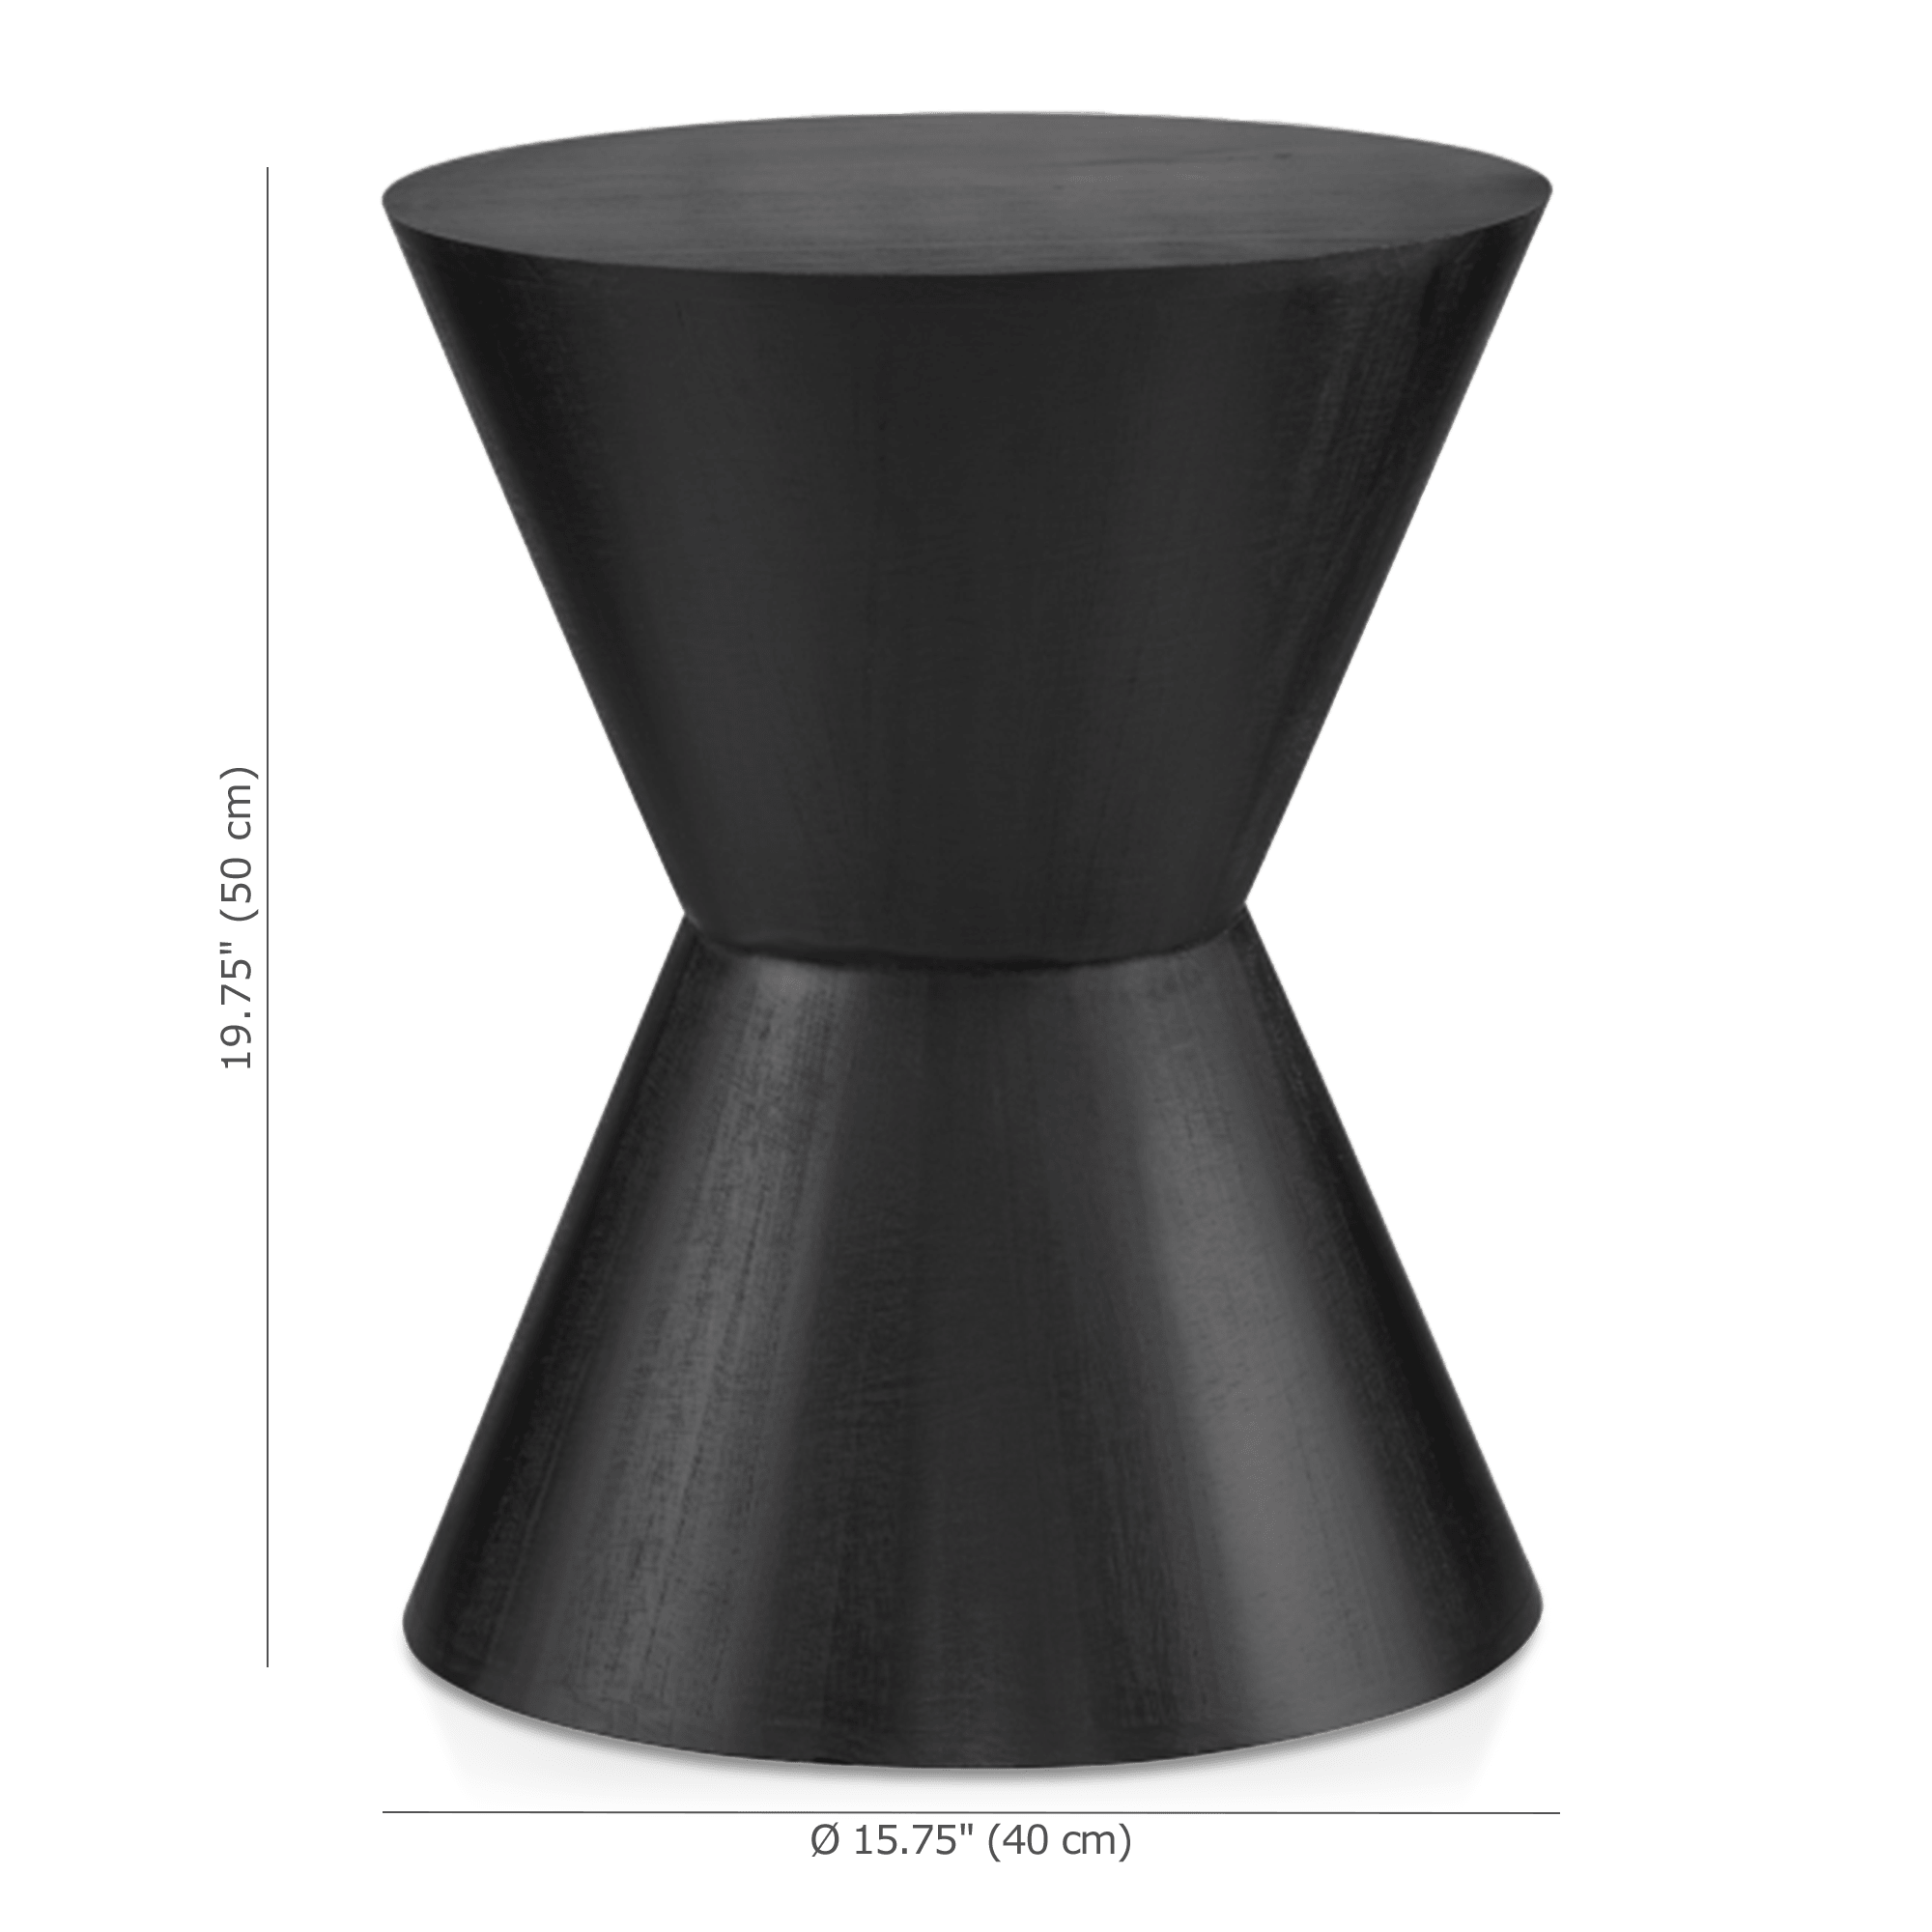 Table d'appoint en forme de sablier en bois noir